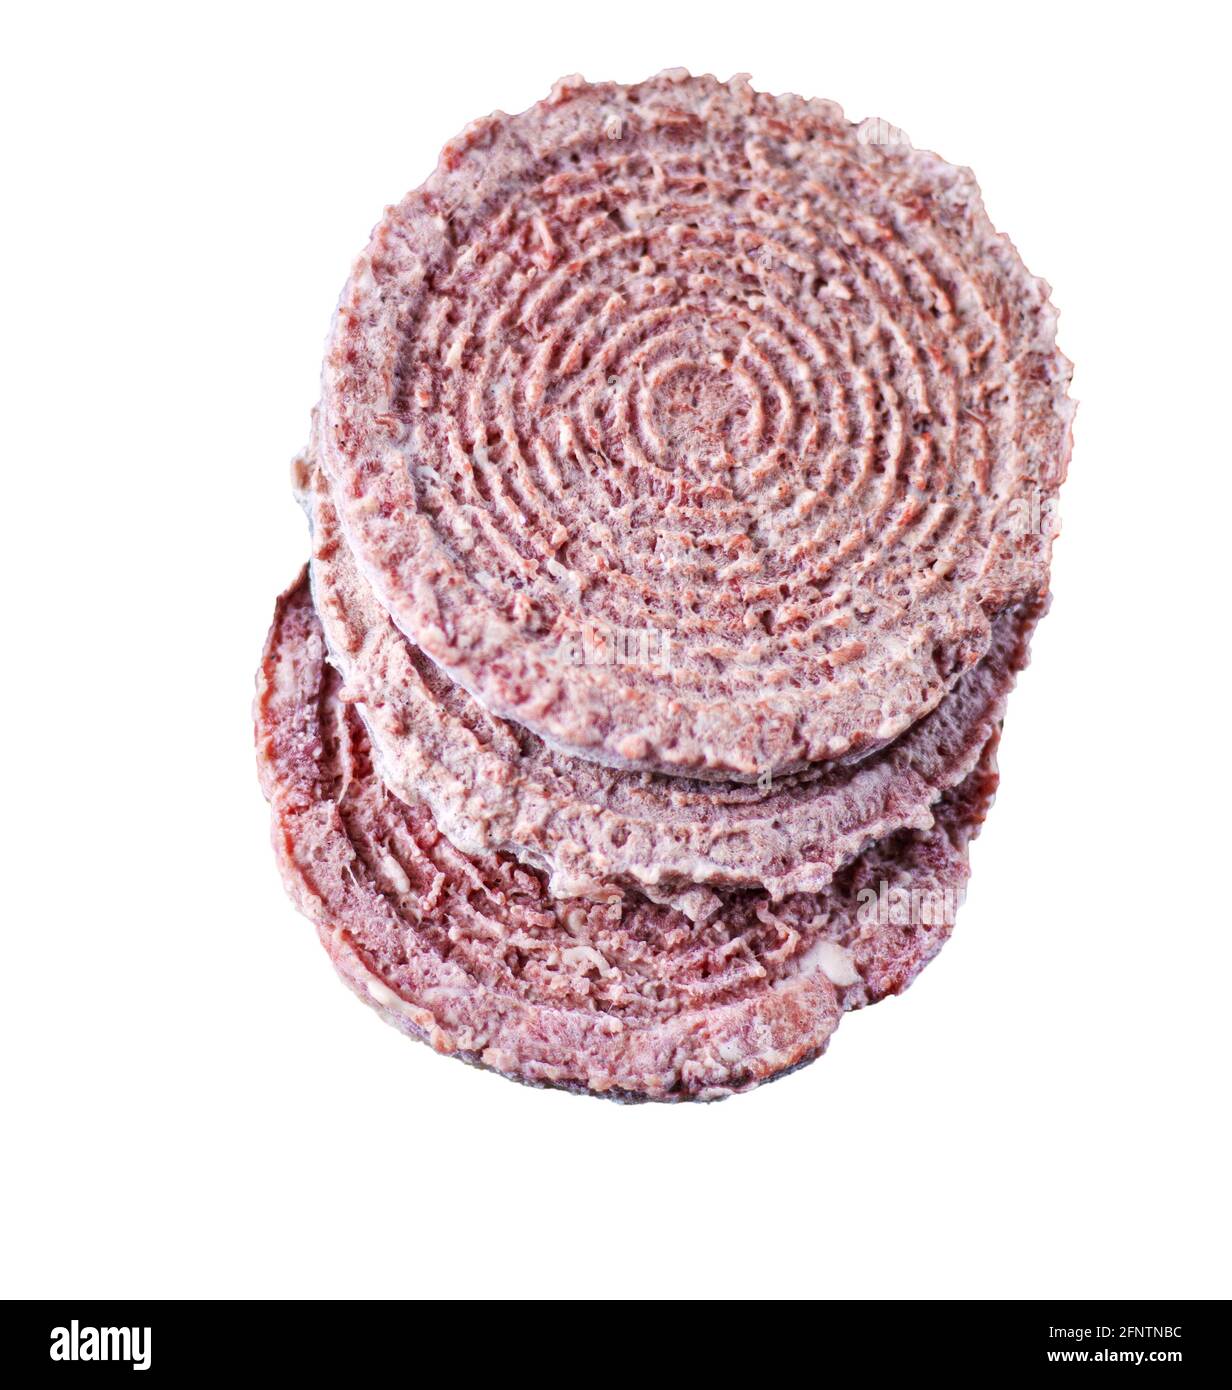 Halbzeuge auf weißem Hintergrund isoliert. Gefrorene Fleischschnitzel. Fleischprodukt aus Schweinefleisch, Rindfleisch. Rundes, flaches Burger-Cutlet Stockfoto